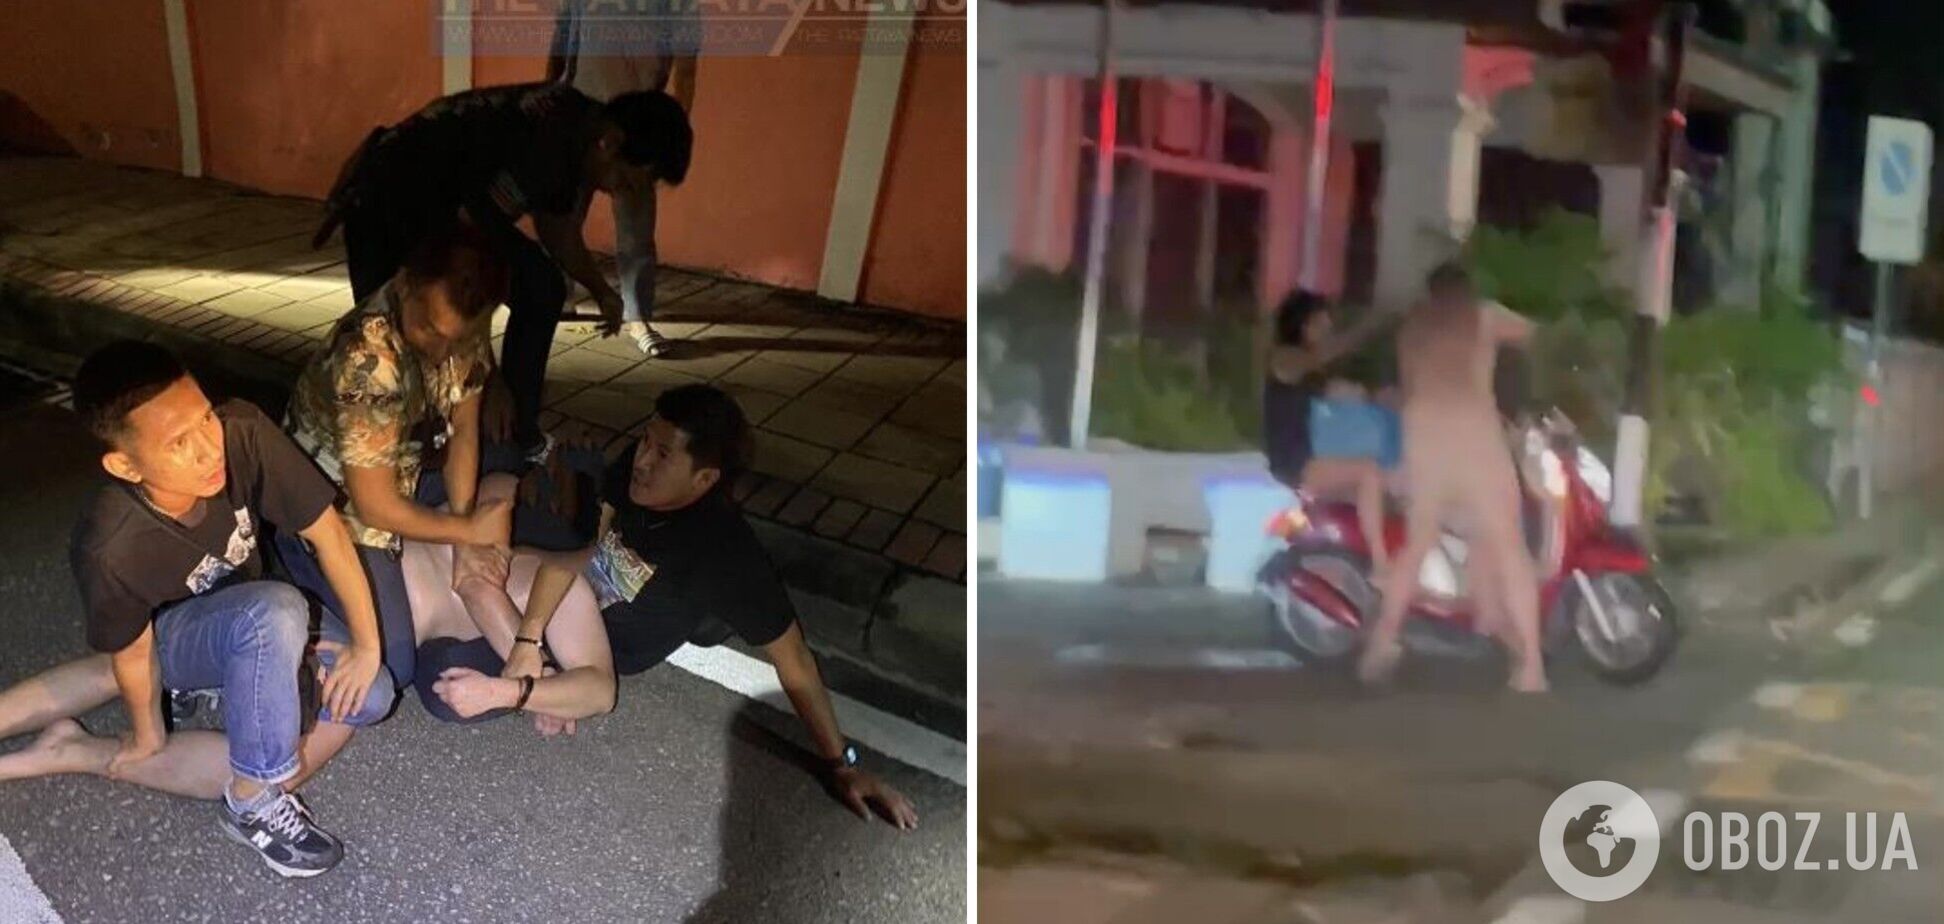 На популярном курорте Таиланда задержали голого российского туриста, который матерился и нападал на людей. Фото, видео